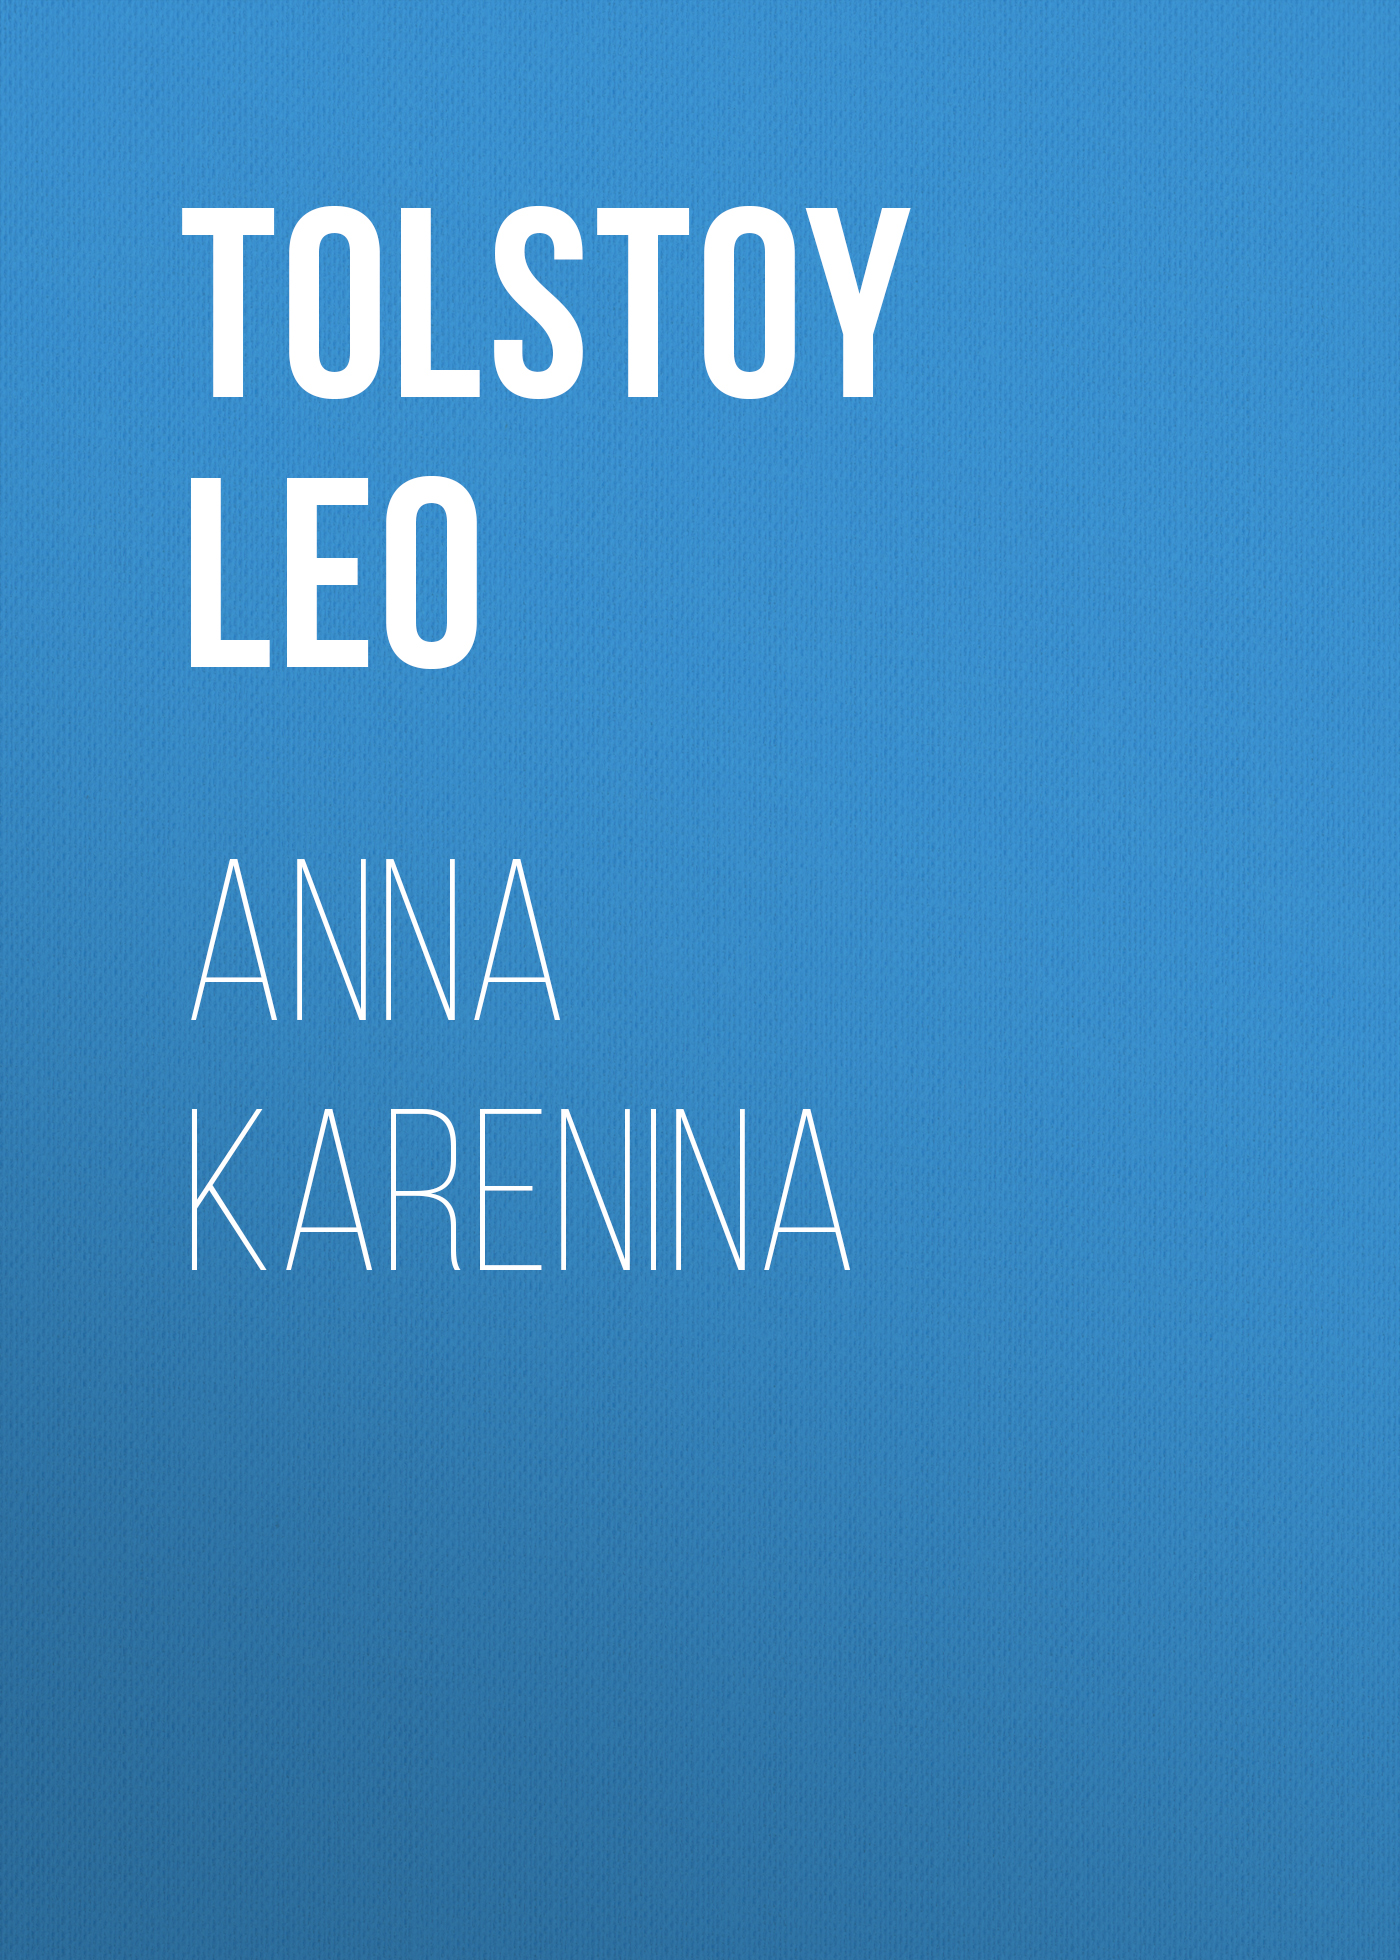 Книга Anna Karenina из серии , созданная Leo Tolstoy, может относится к жанру Классическая проза, Русская классика, Иностранные языки. Стоимость электронной книги Anna Karenina с идентификатором 23301522 составляет 5.99 руб.